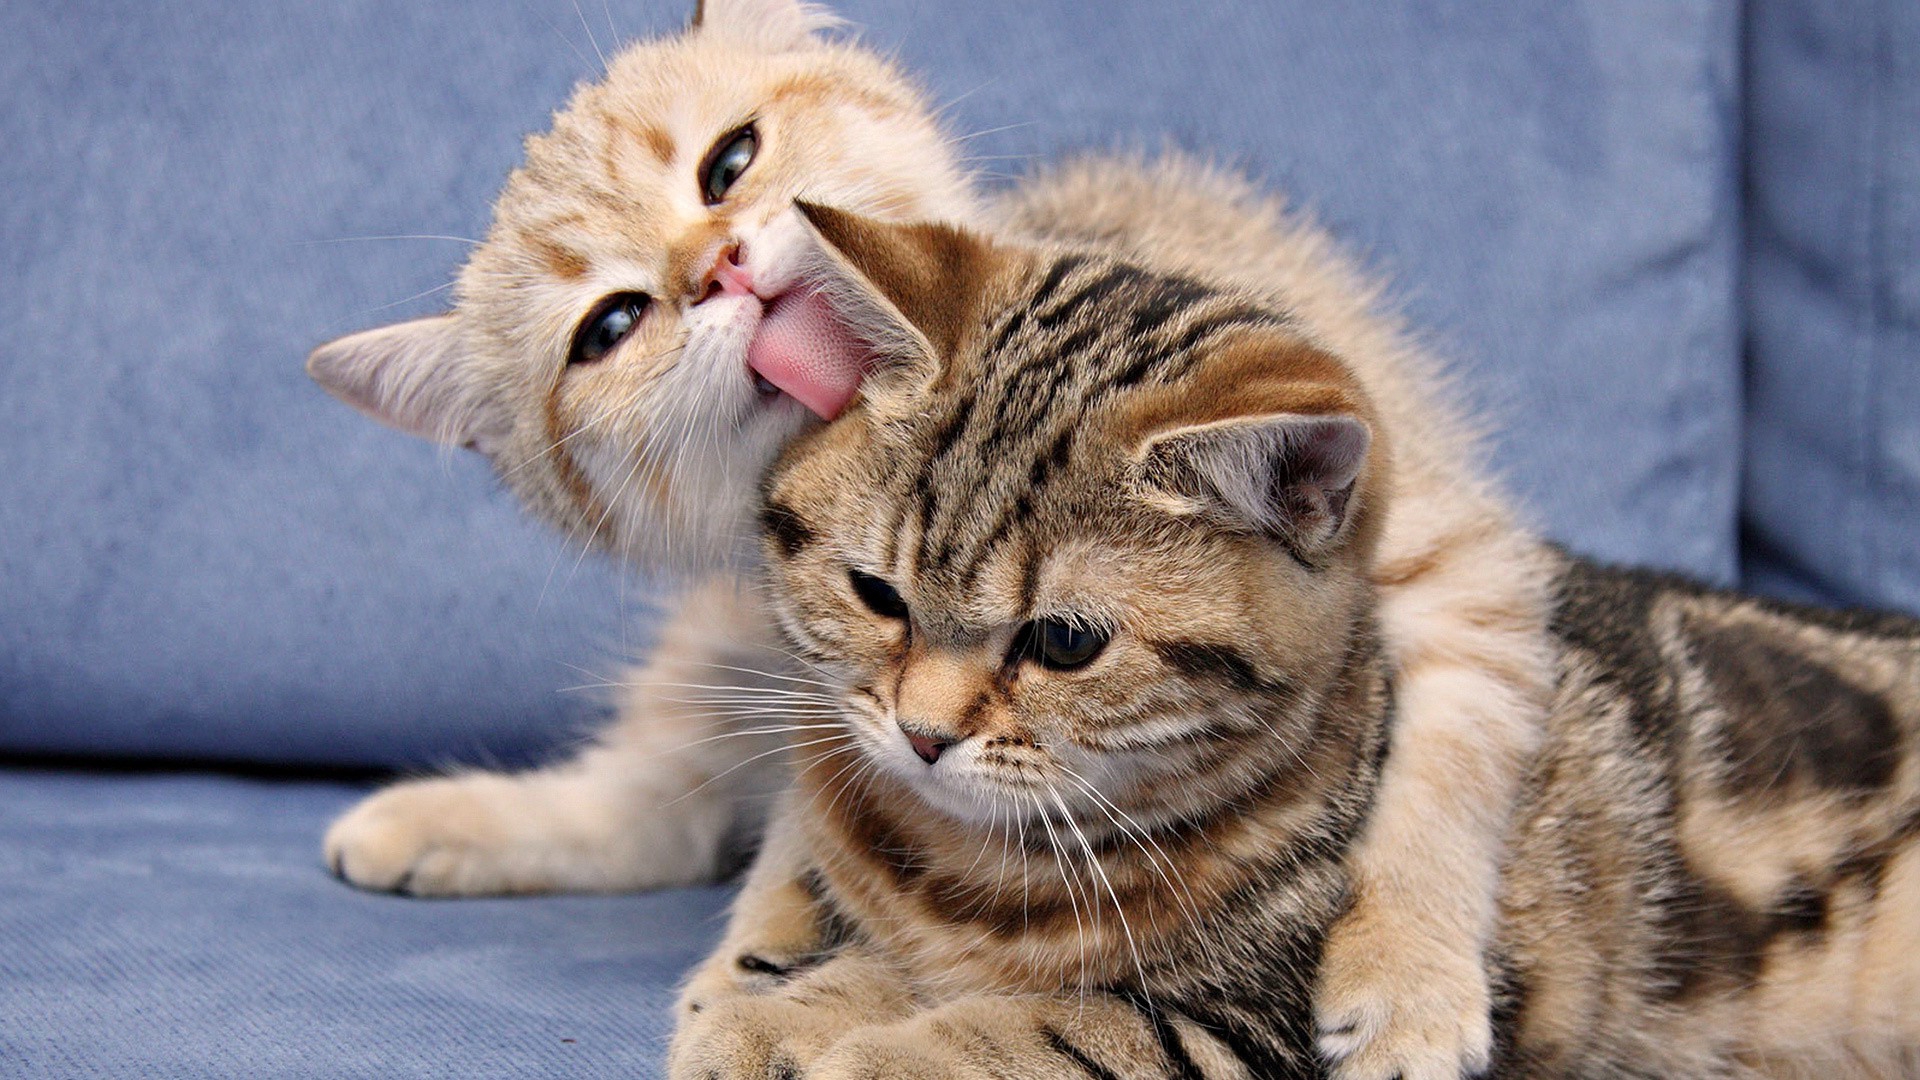 Скачать обои бесплатно Кошки (Коты Котики), Животные картинка на рабочий стол ПК